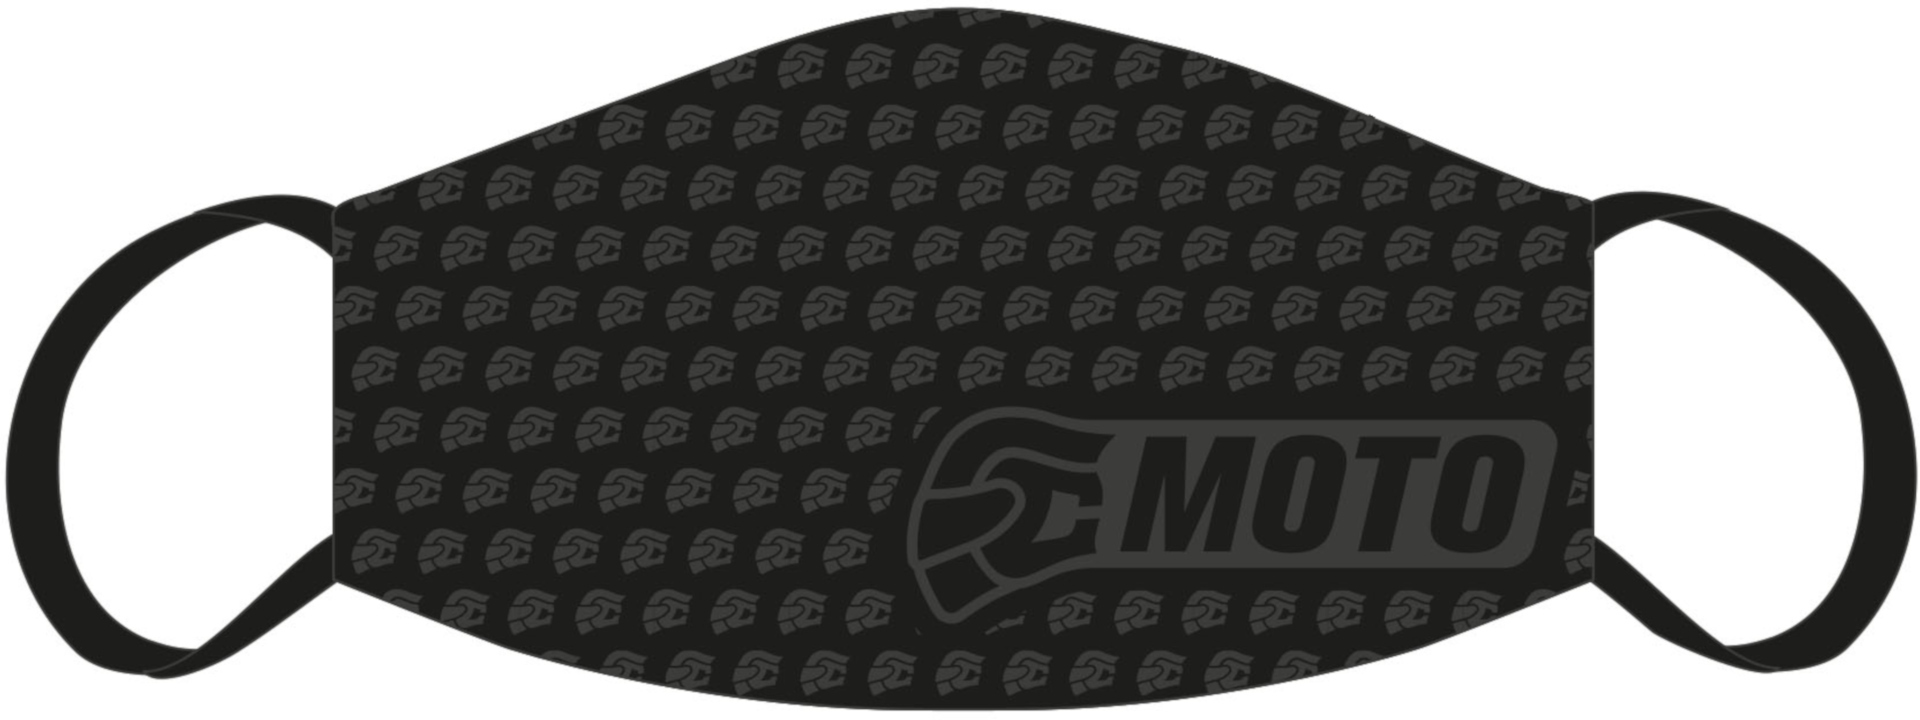 FC-Moto Masque facial Noir unique taille